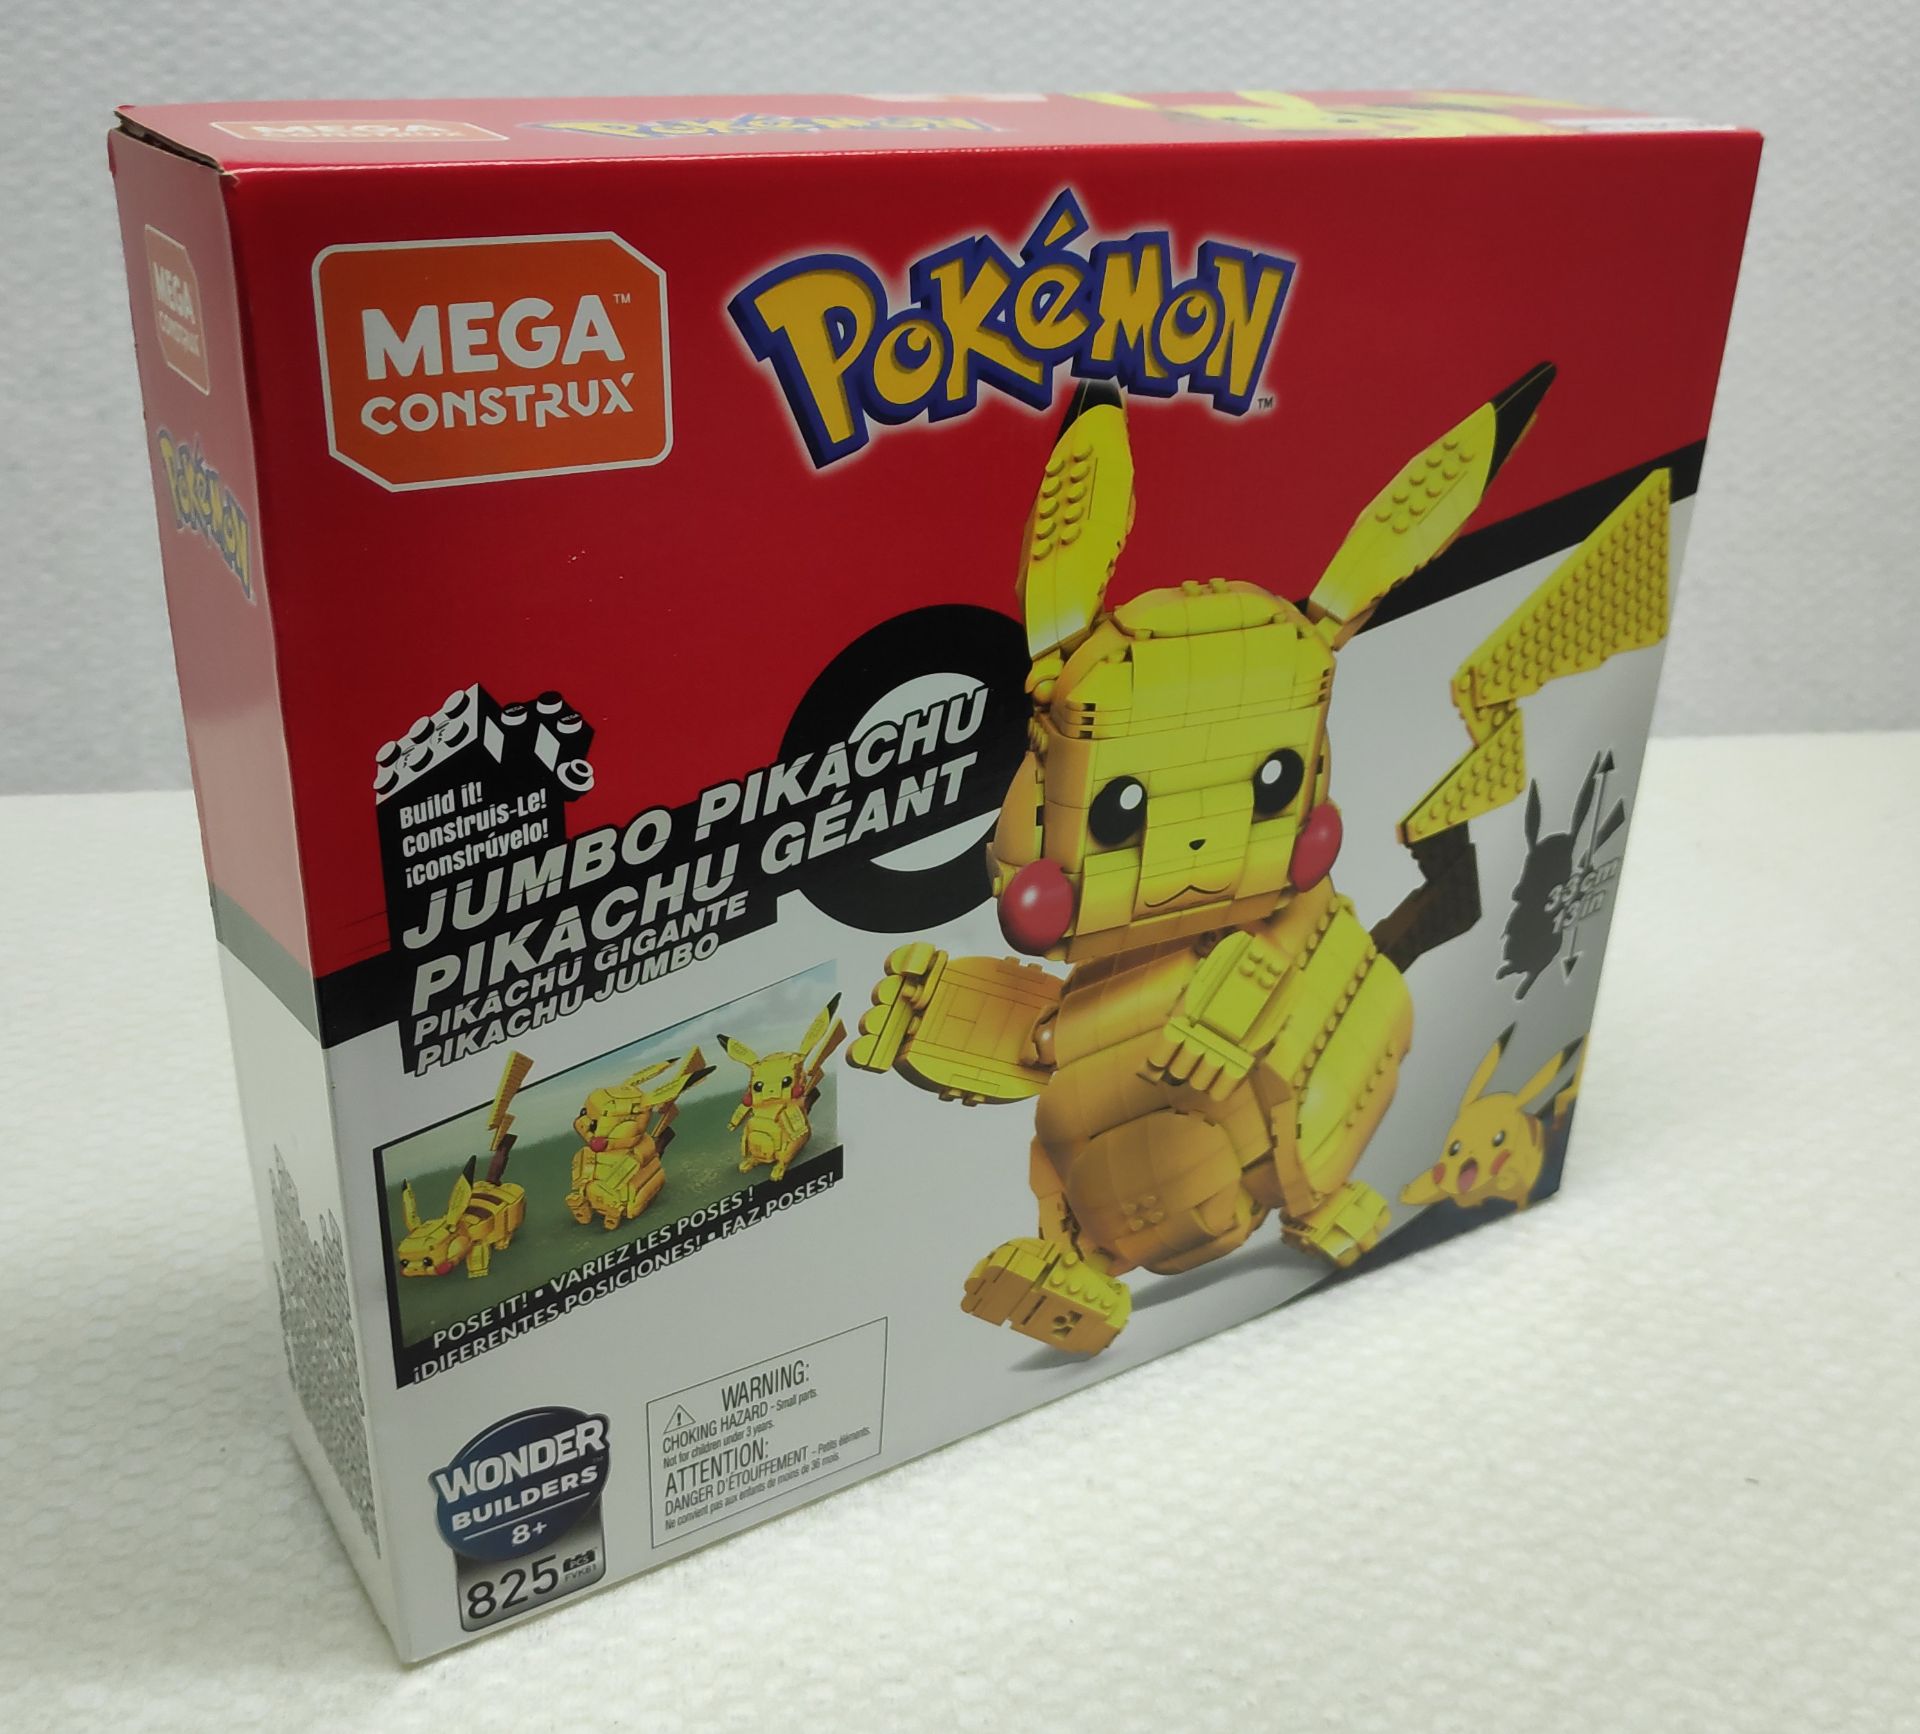 1 x Pokemon Mega Construx Jumbo Pikachu Lego-Style Building Set - New/Boxed - Image 2 of 7